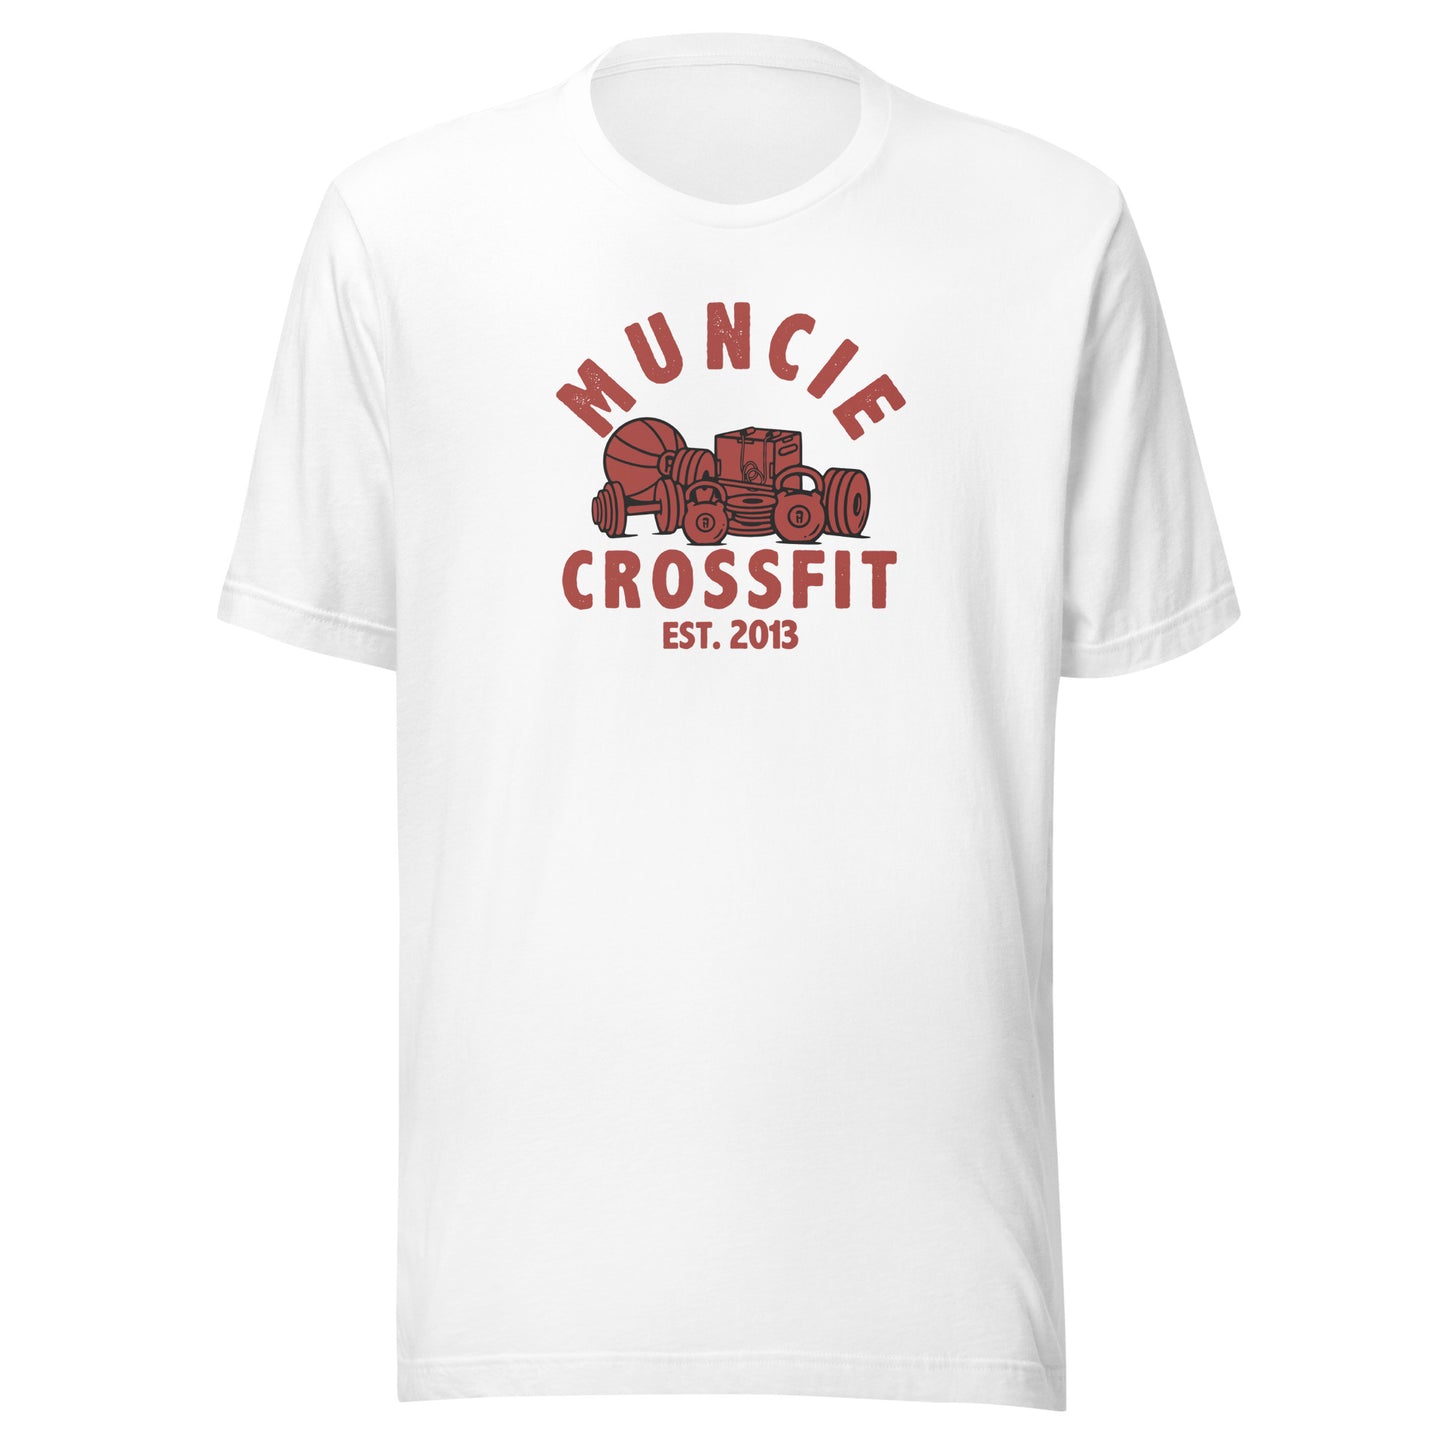 Muncie CrossFit Tee Red Logo